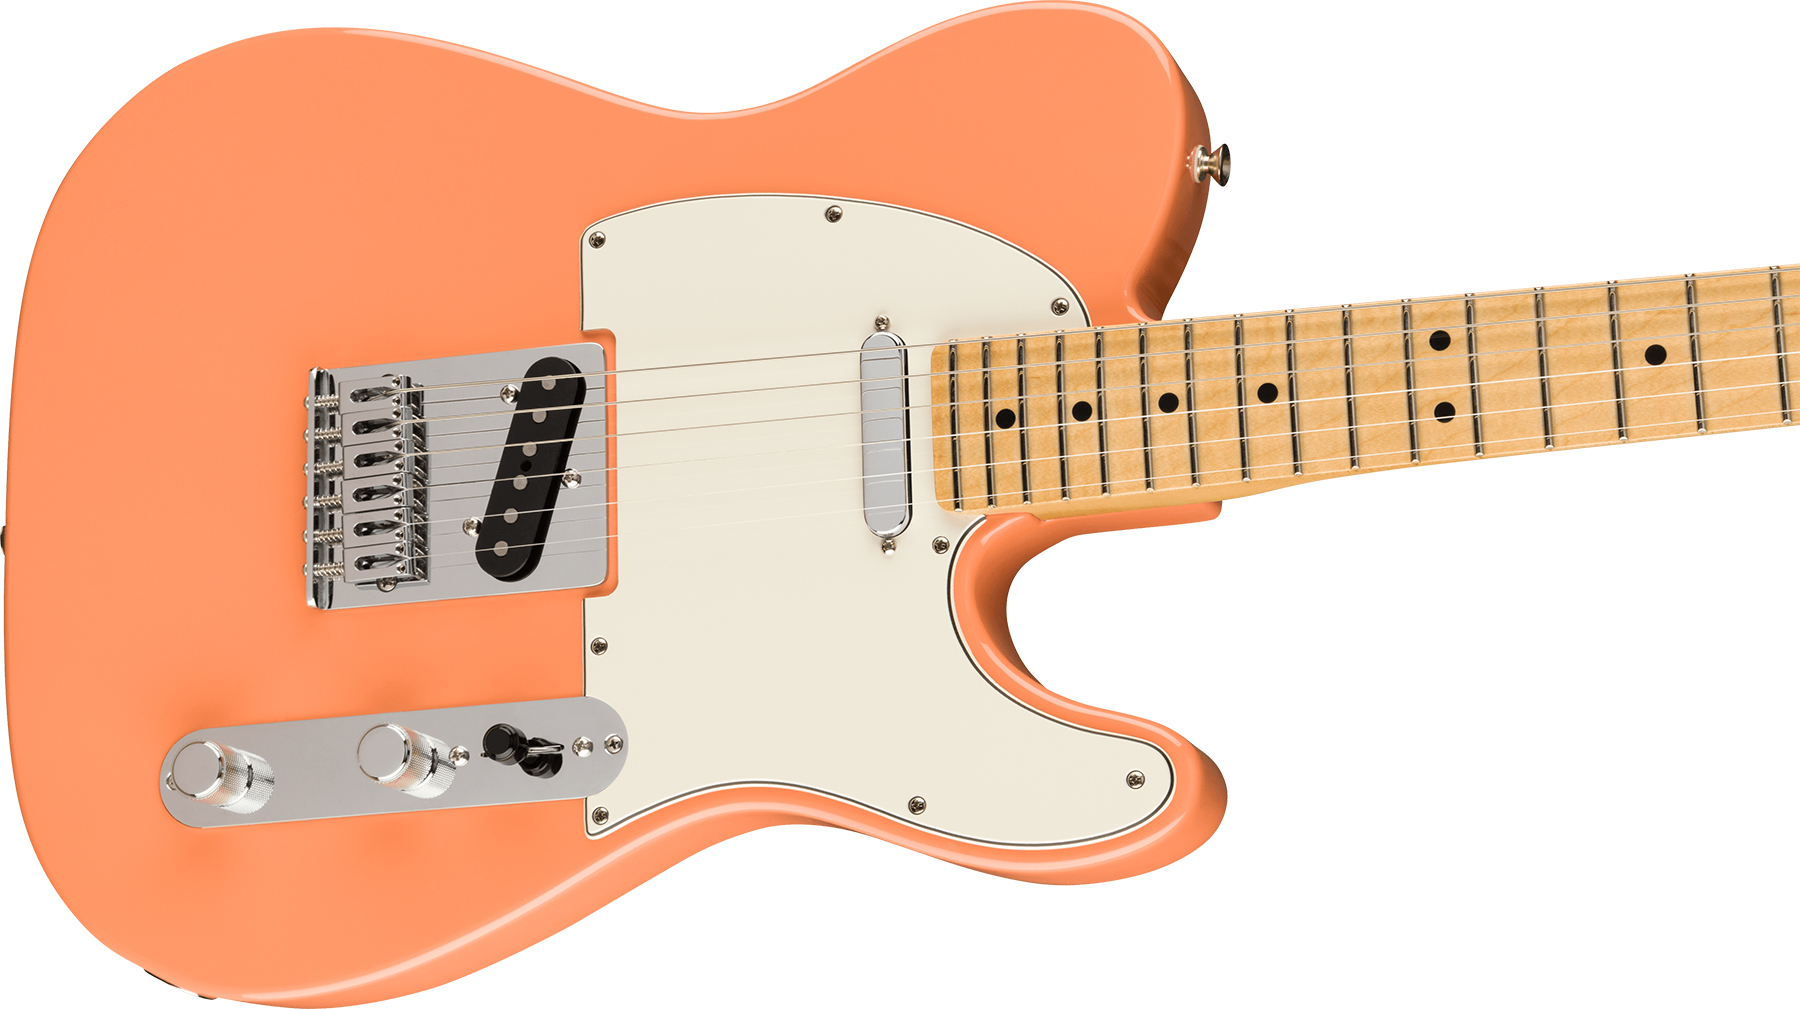 Fender Tele Player Ltd Mex 2s Ht Mn - Pacific Peach - Televorm elektrische gitaar - Variation 2